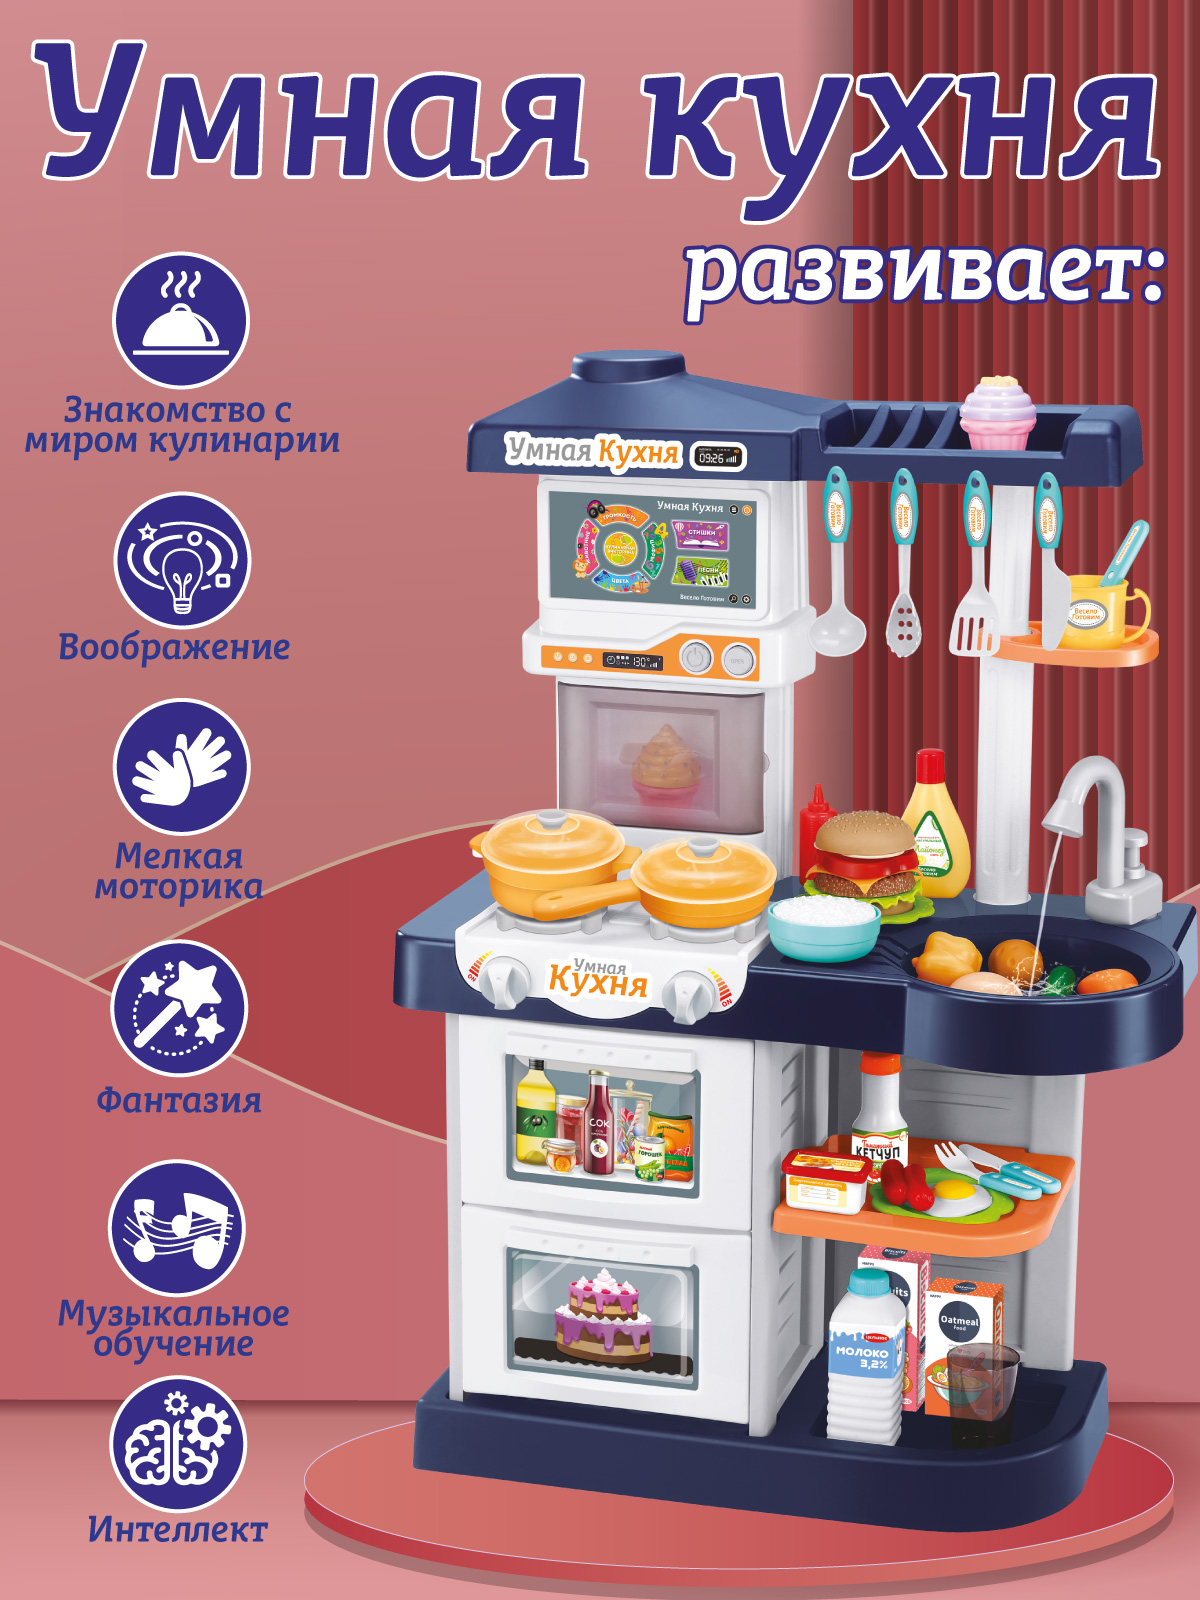 Игровой набор детский AMORE BELLO Умная Кухня с пультом с паром и кран с водой игрушечные продукты и посуда 42 JB0209162 - фото 5